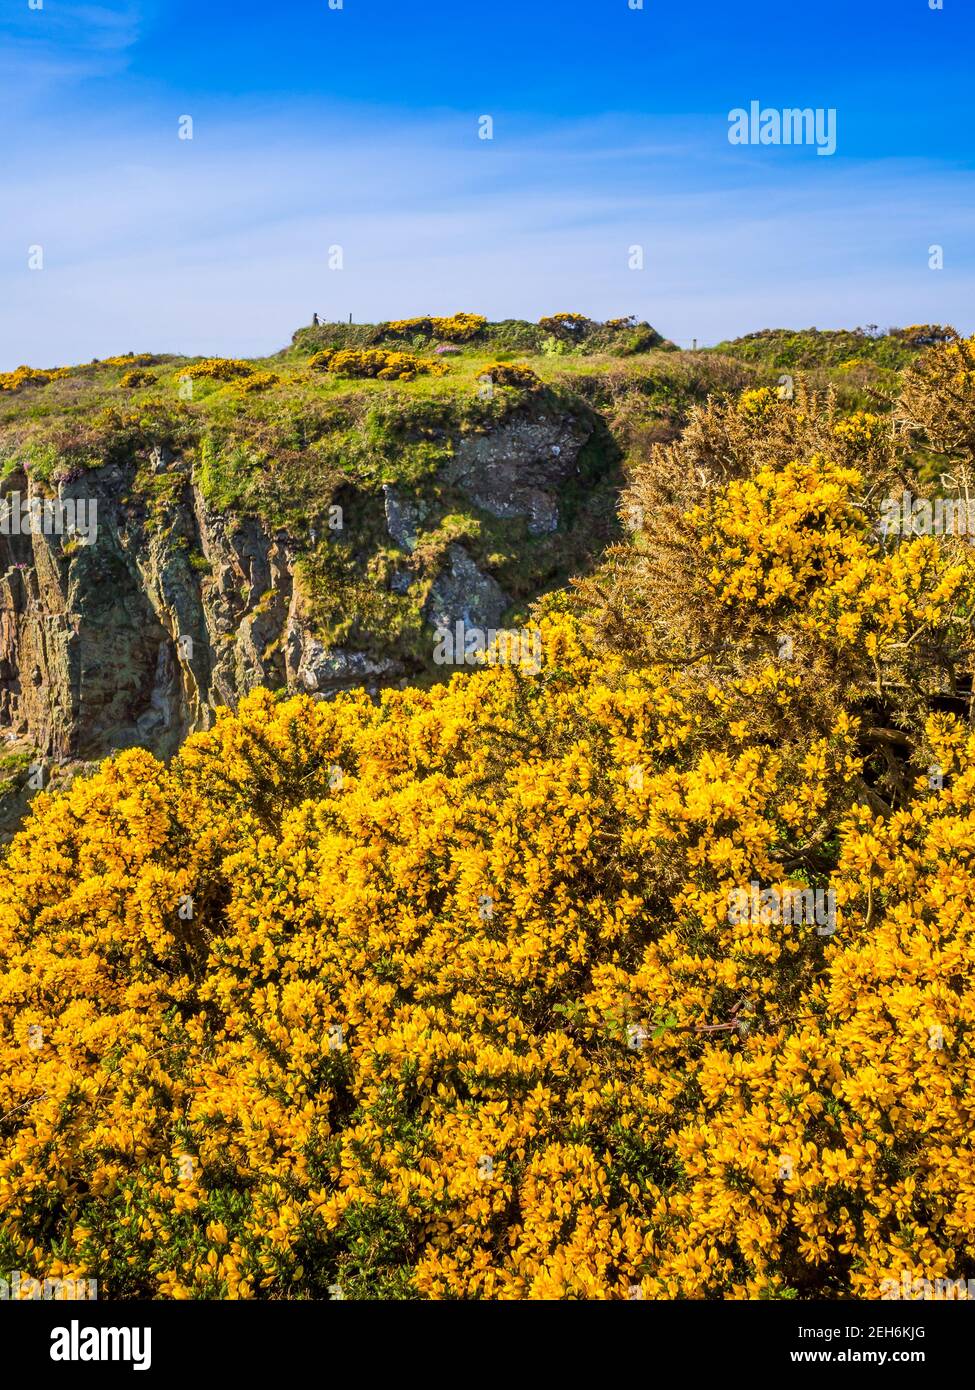 Brillante gola dorata sulle cime della scogliera a St non's Bay vicino a St Davids nel Galles occidentale. Foto Stock